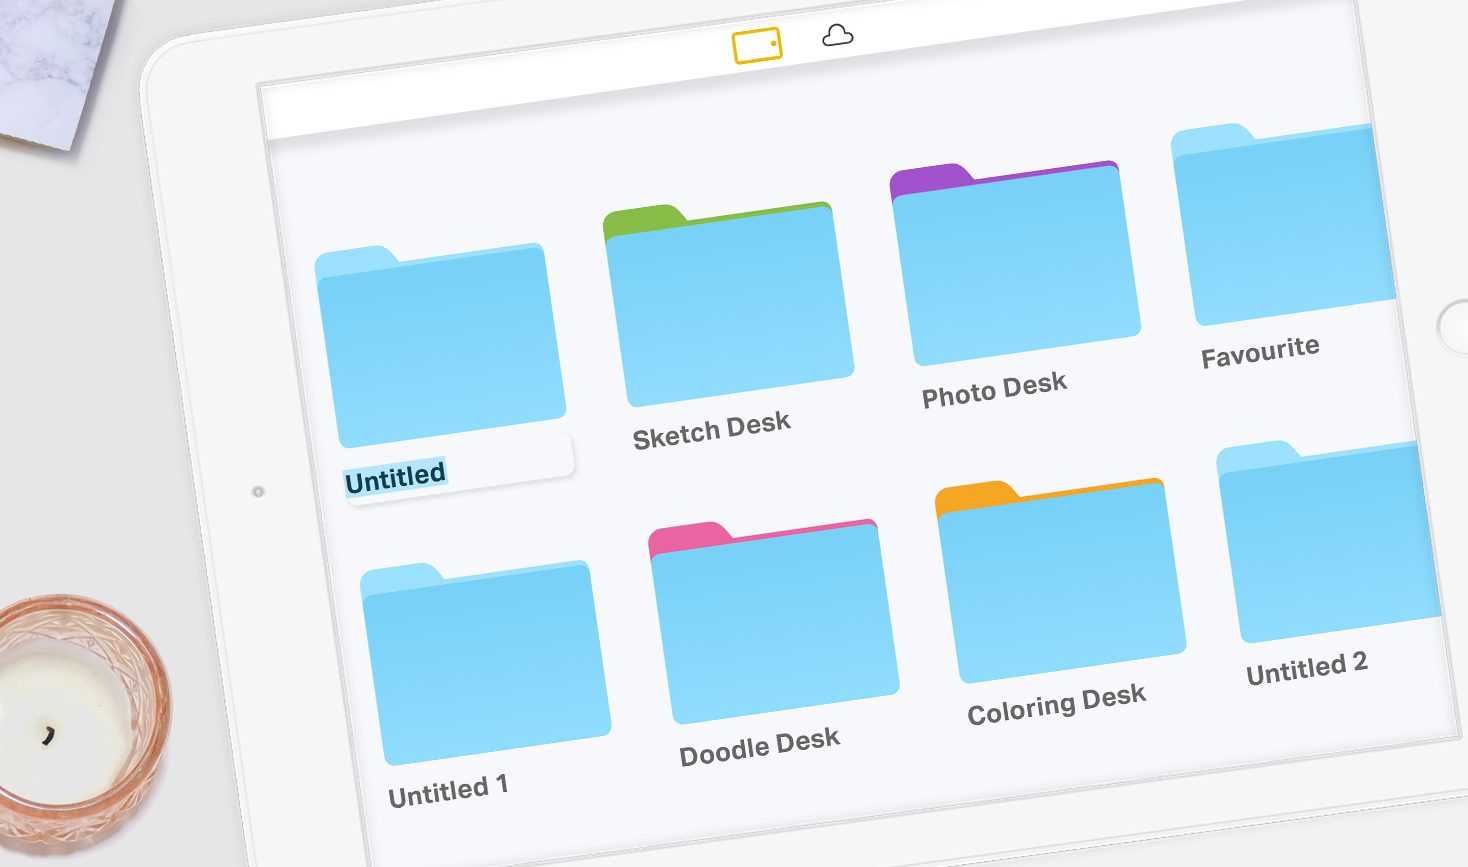 Renaming folders